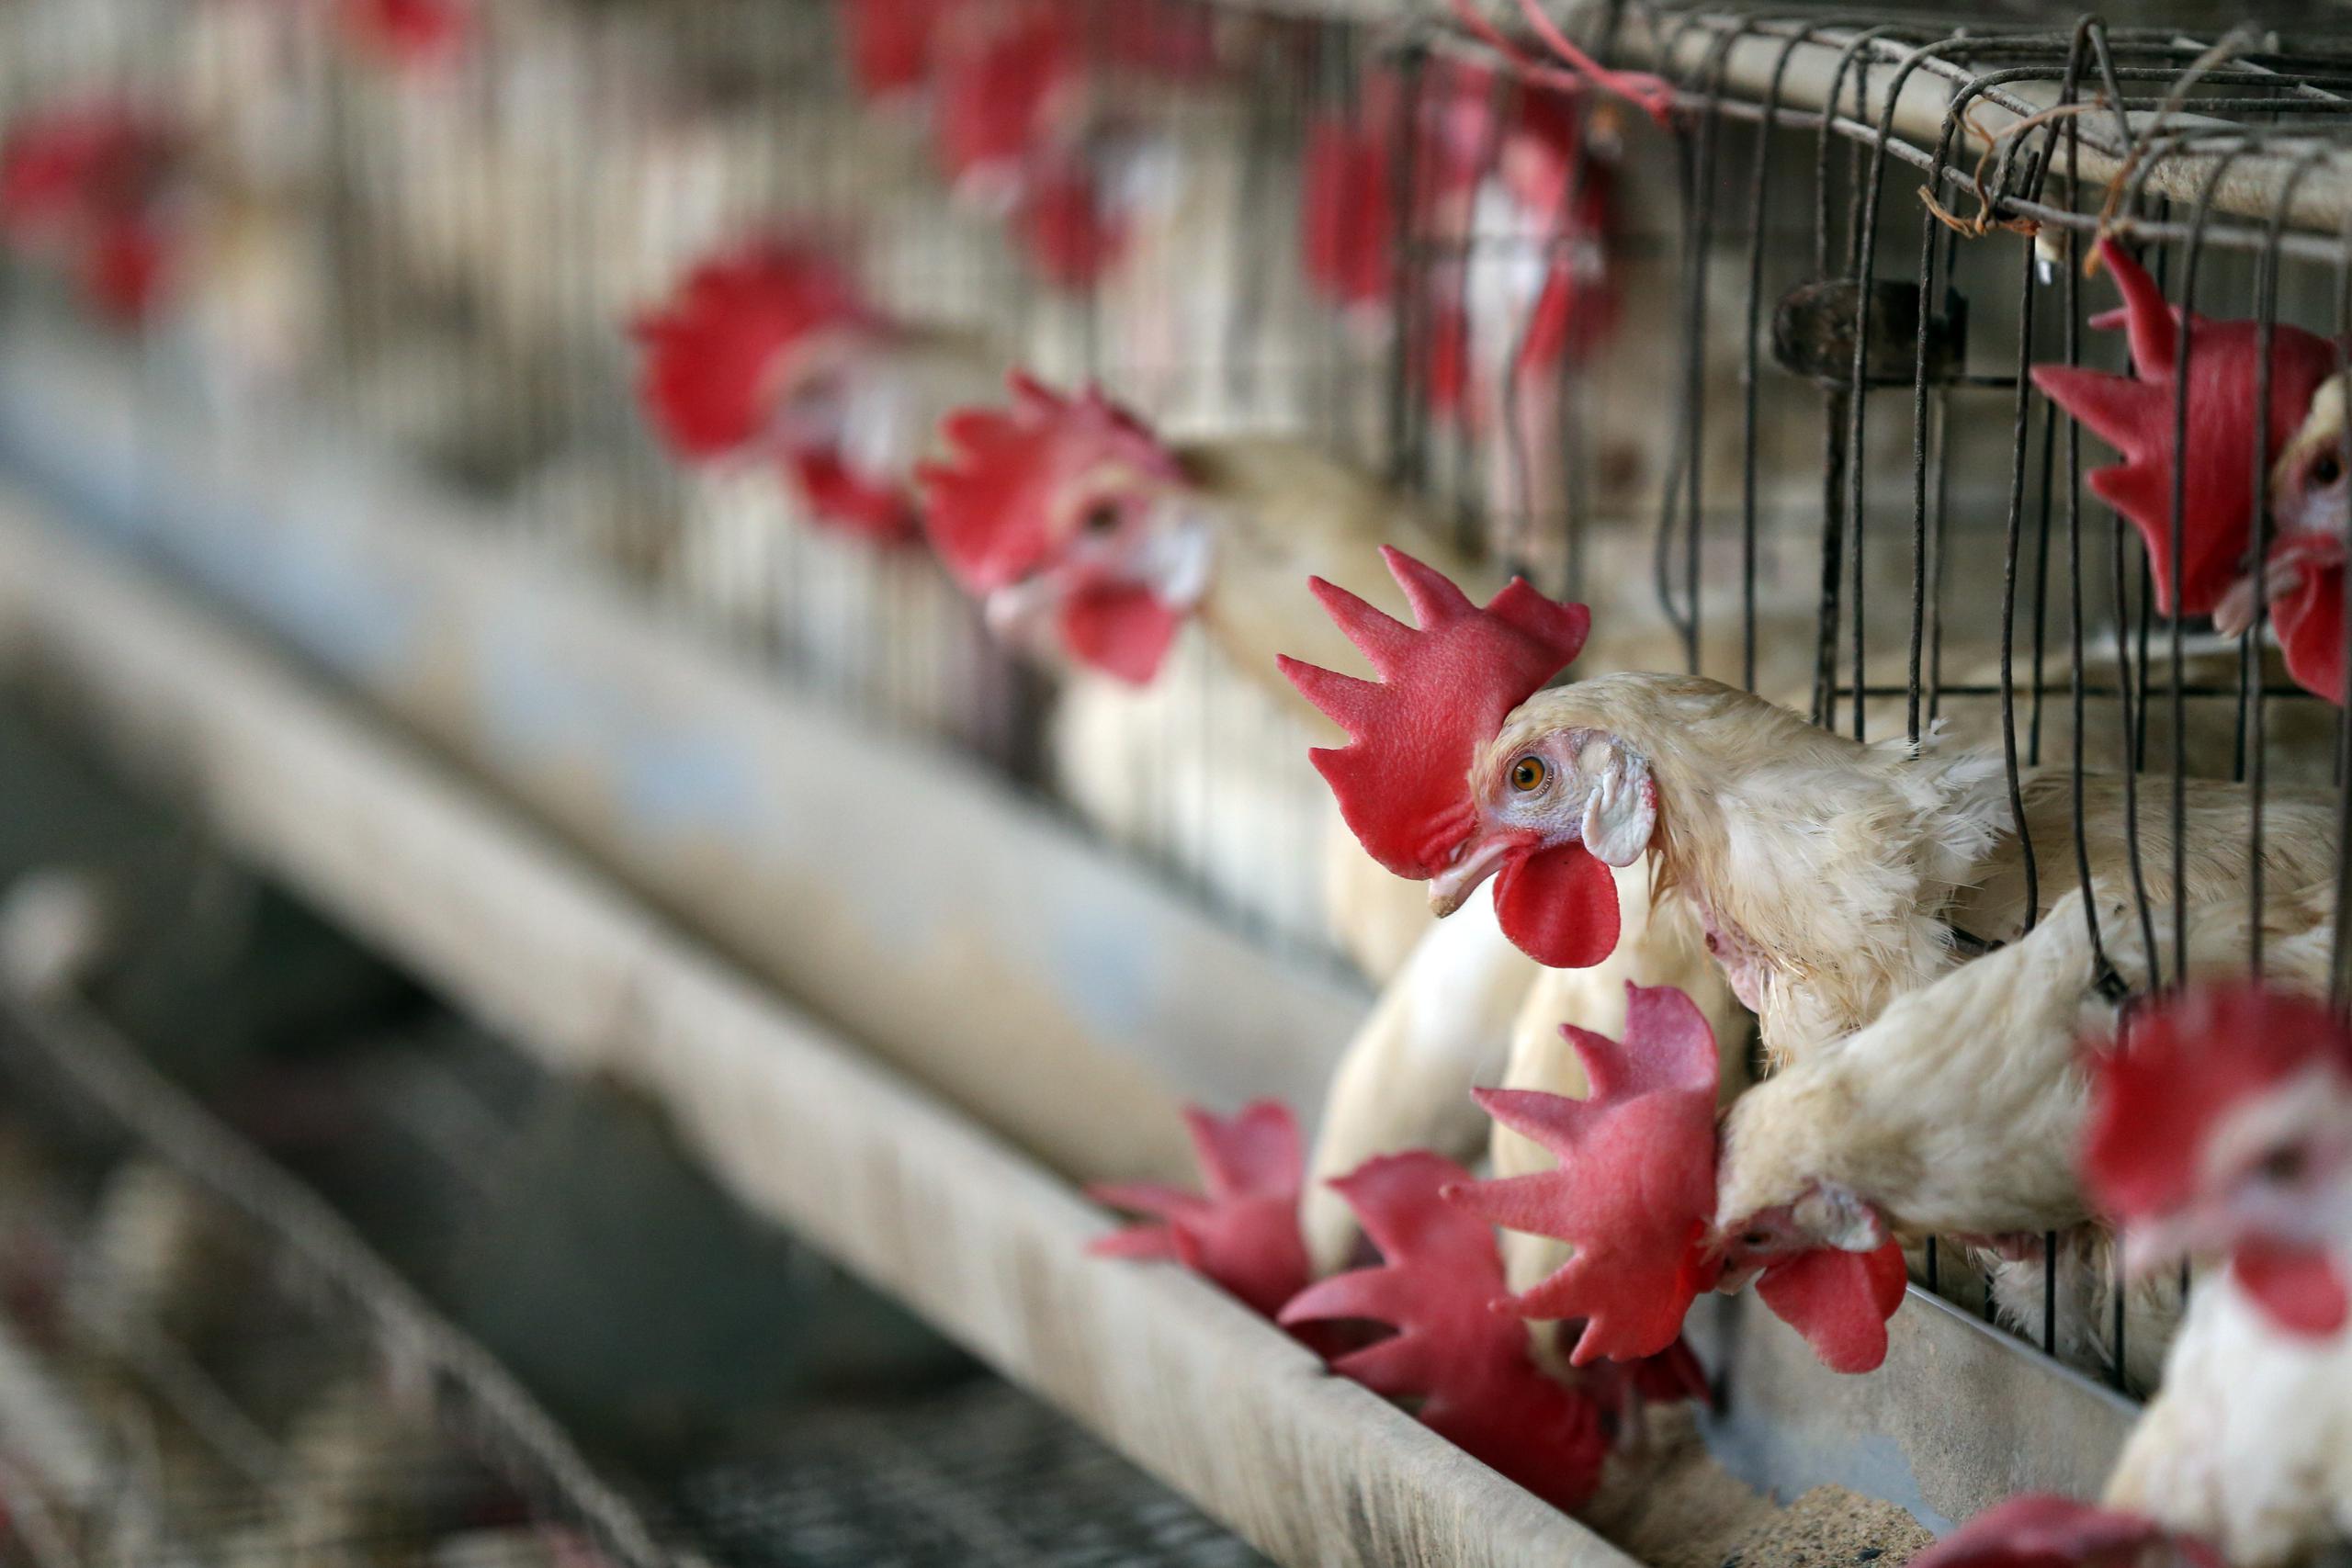 La gripe aviar es mortal para las aves. Como hasta el presente, no se ha identificado cura para combatir esta enfermedad, se deben sacrificar los animales contagiados. (Imagen de archivo/EFE/EPA/RAMINDER PAL SINGH)